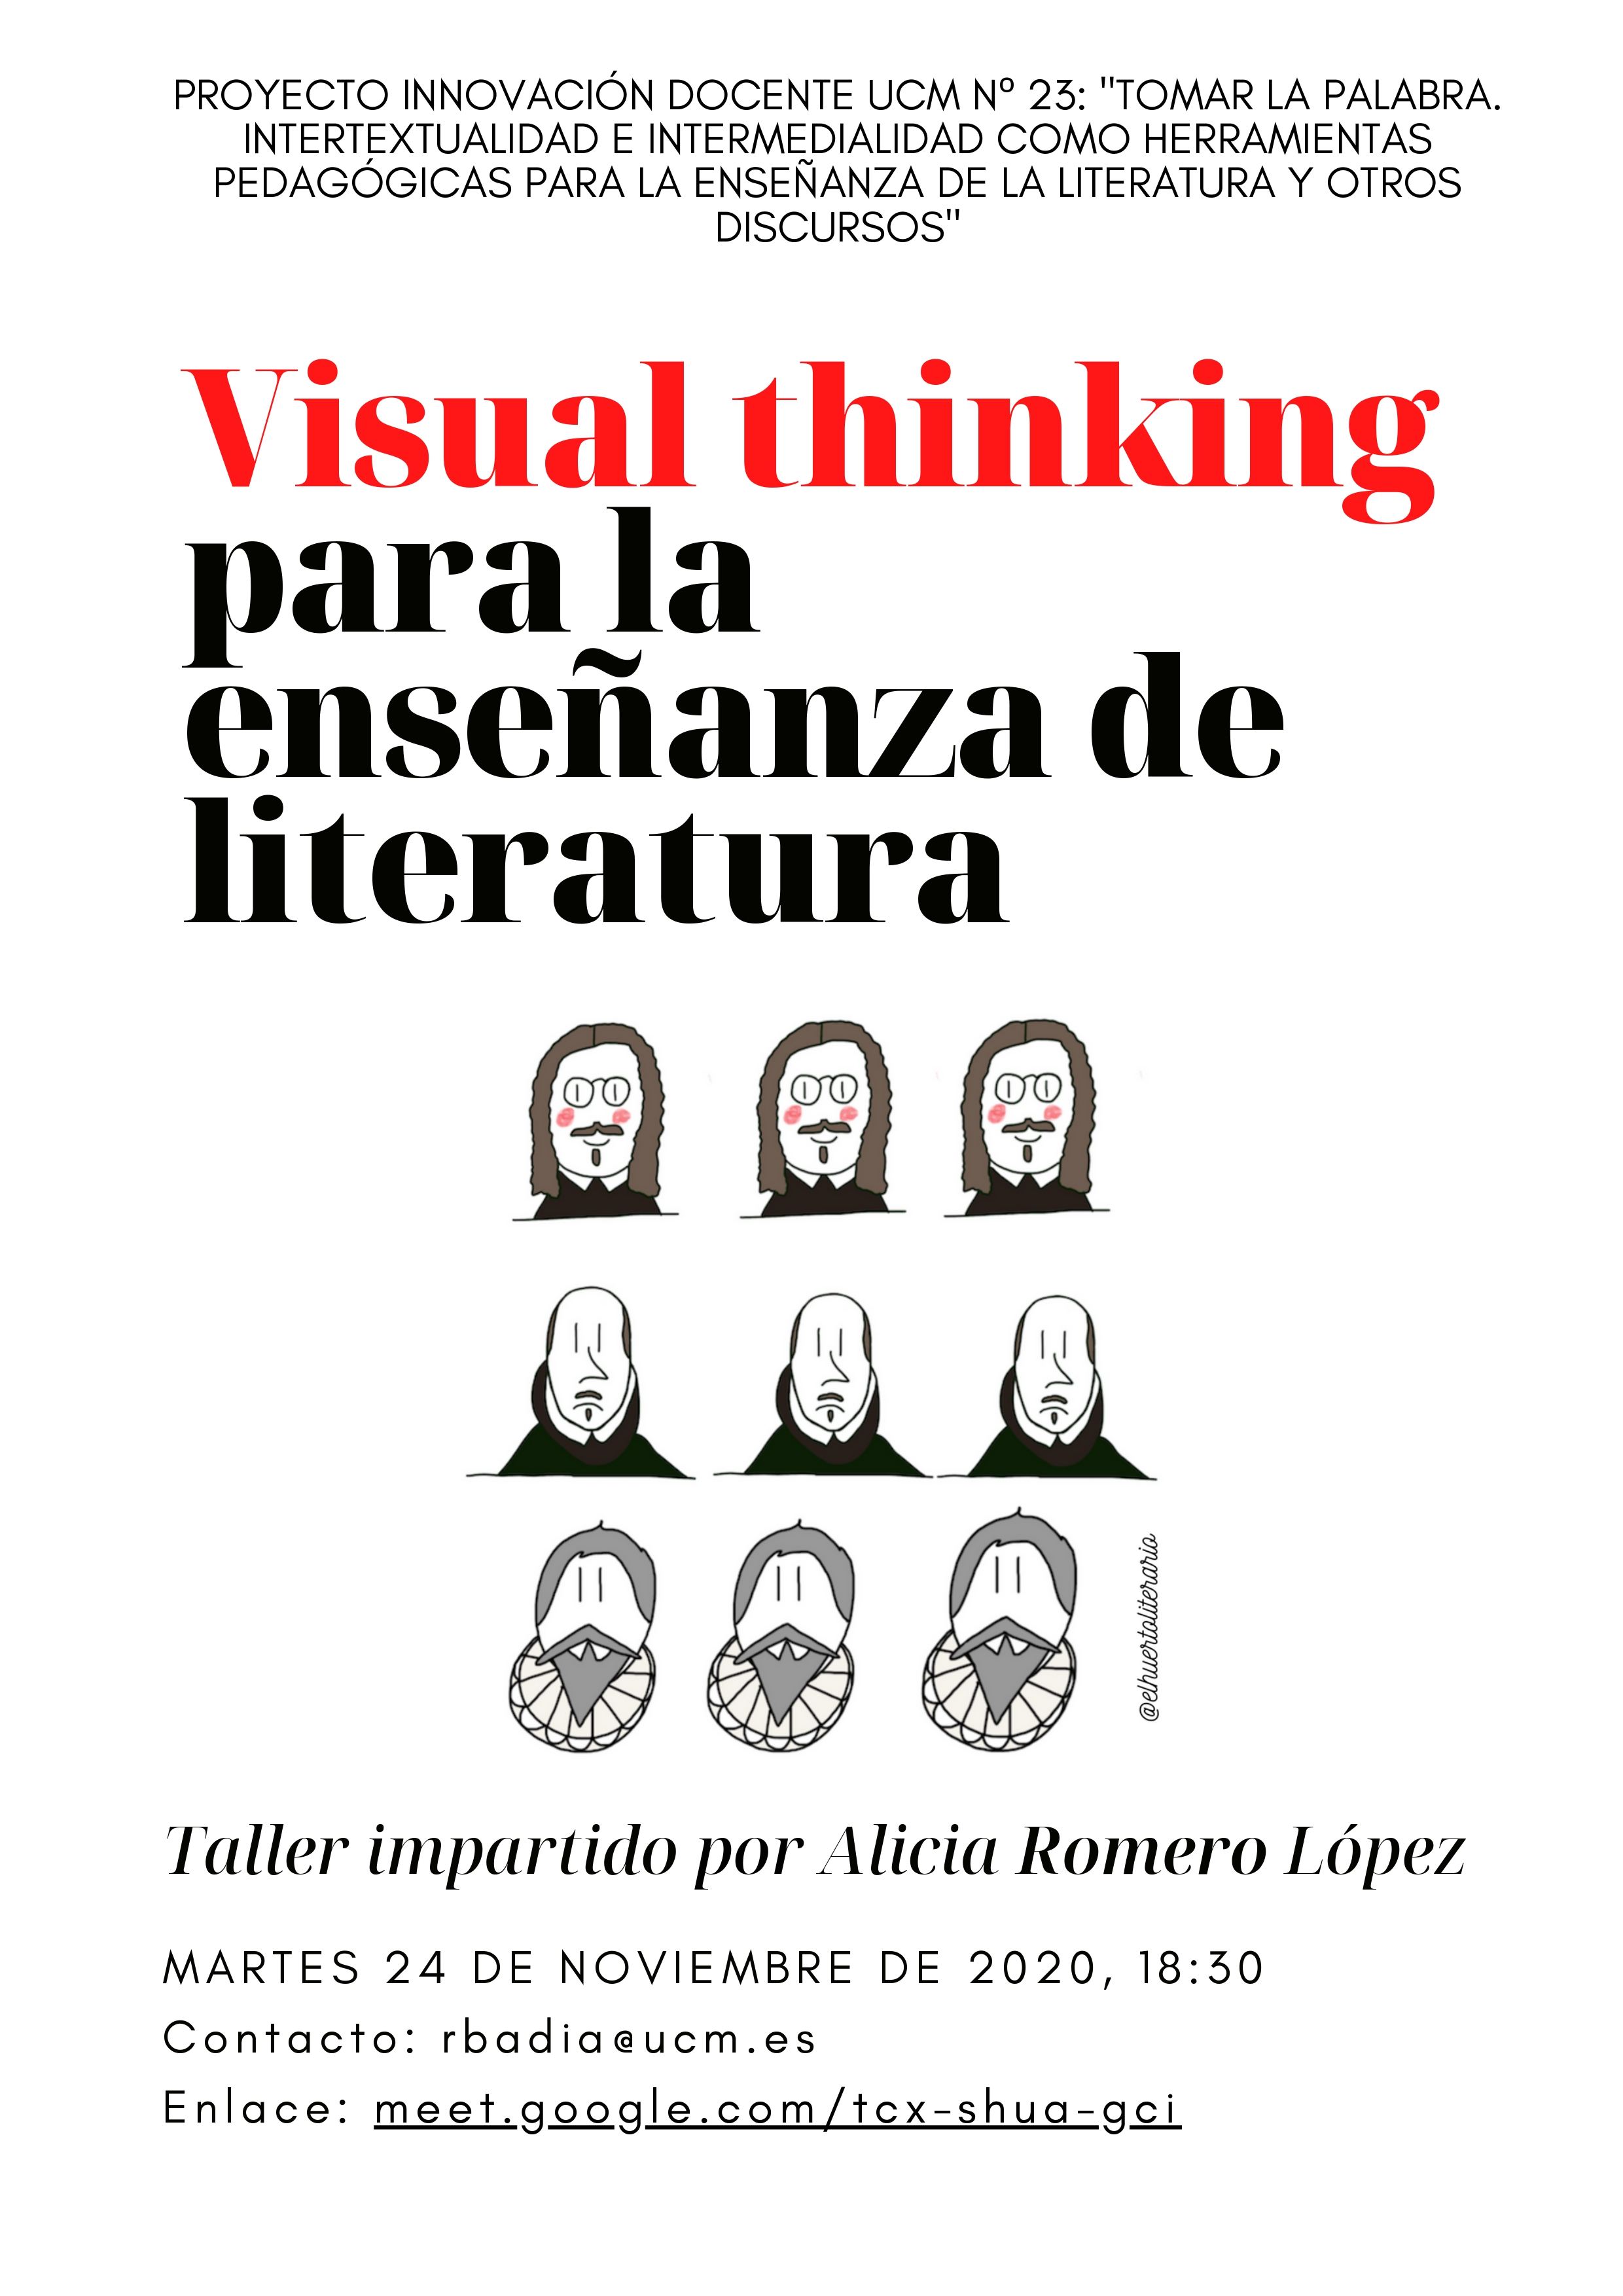 Taller virtual de Visual thinking para la enseñanza de literatura, impartido por Alicia Romero López